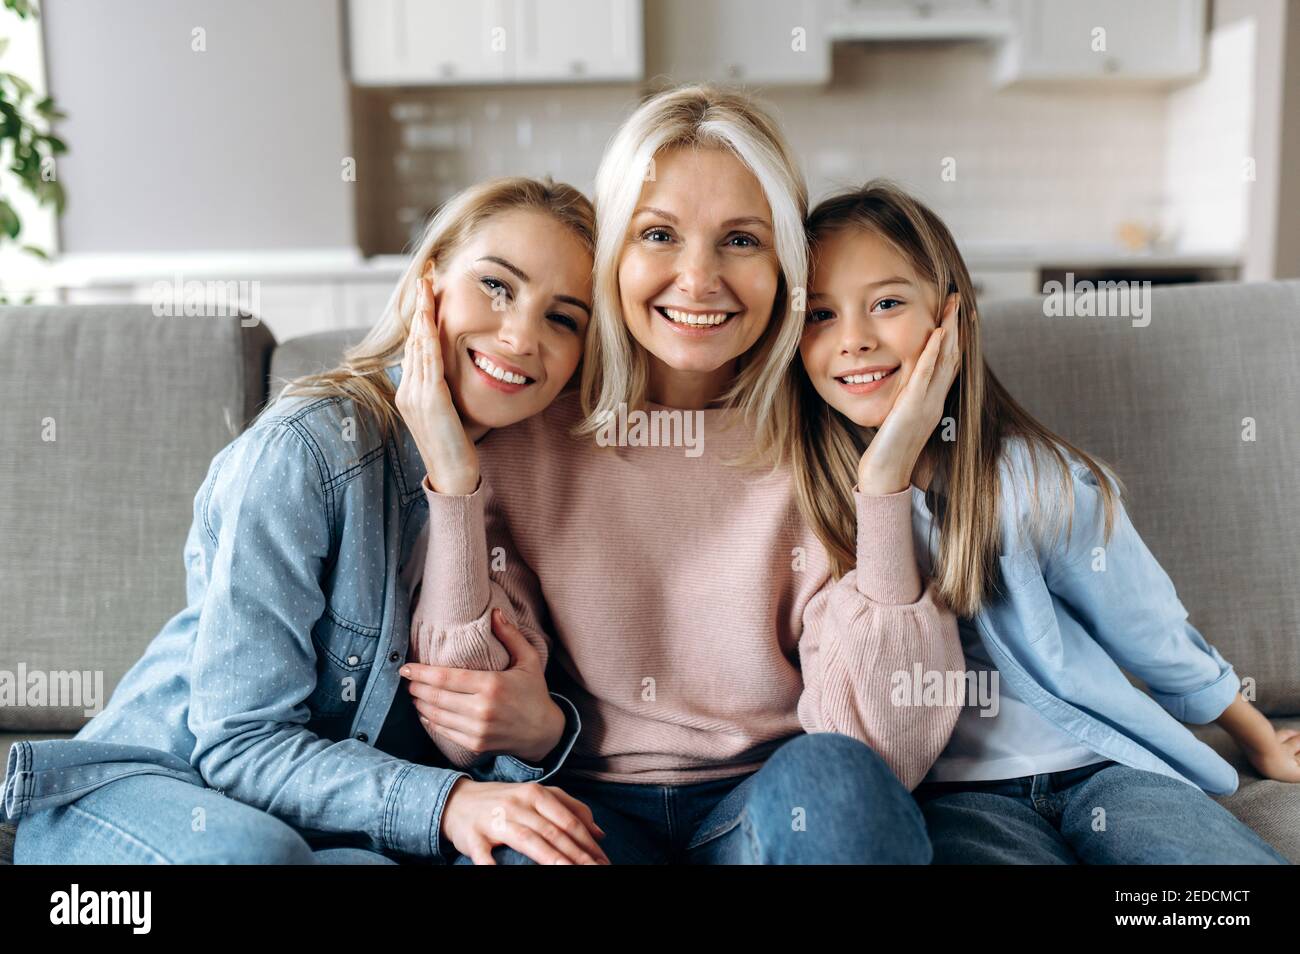 Ritratto di una felice nonna caucasica, figlia e nipote, sono seduti a casa sul divano, guardando la macchina fotografica e sorridendo. Rapporti e valori familiari Foto Stock